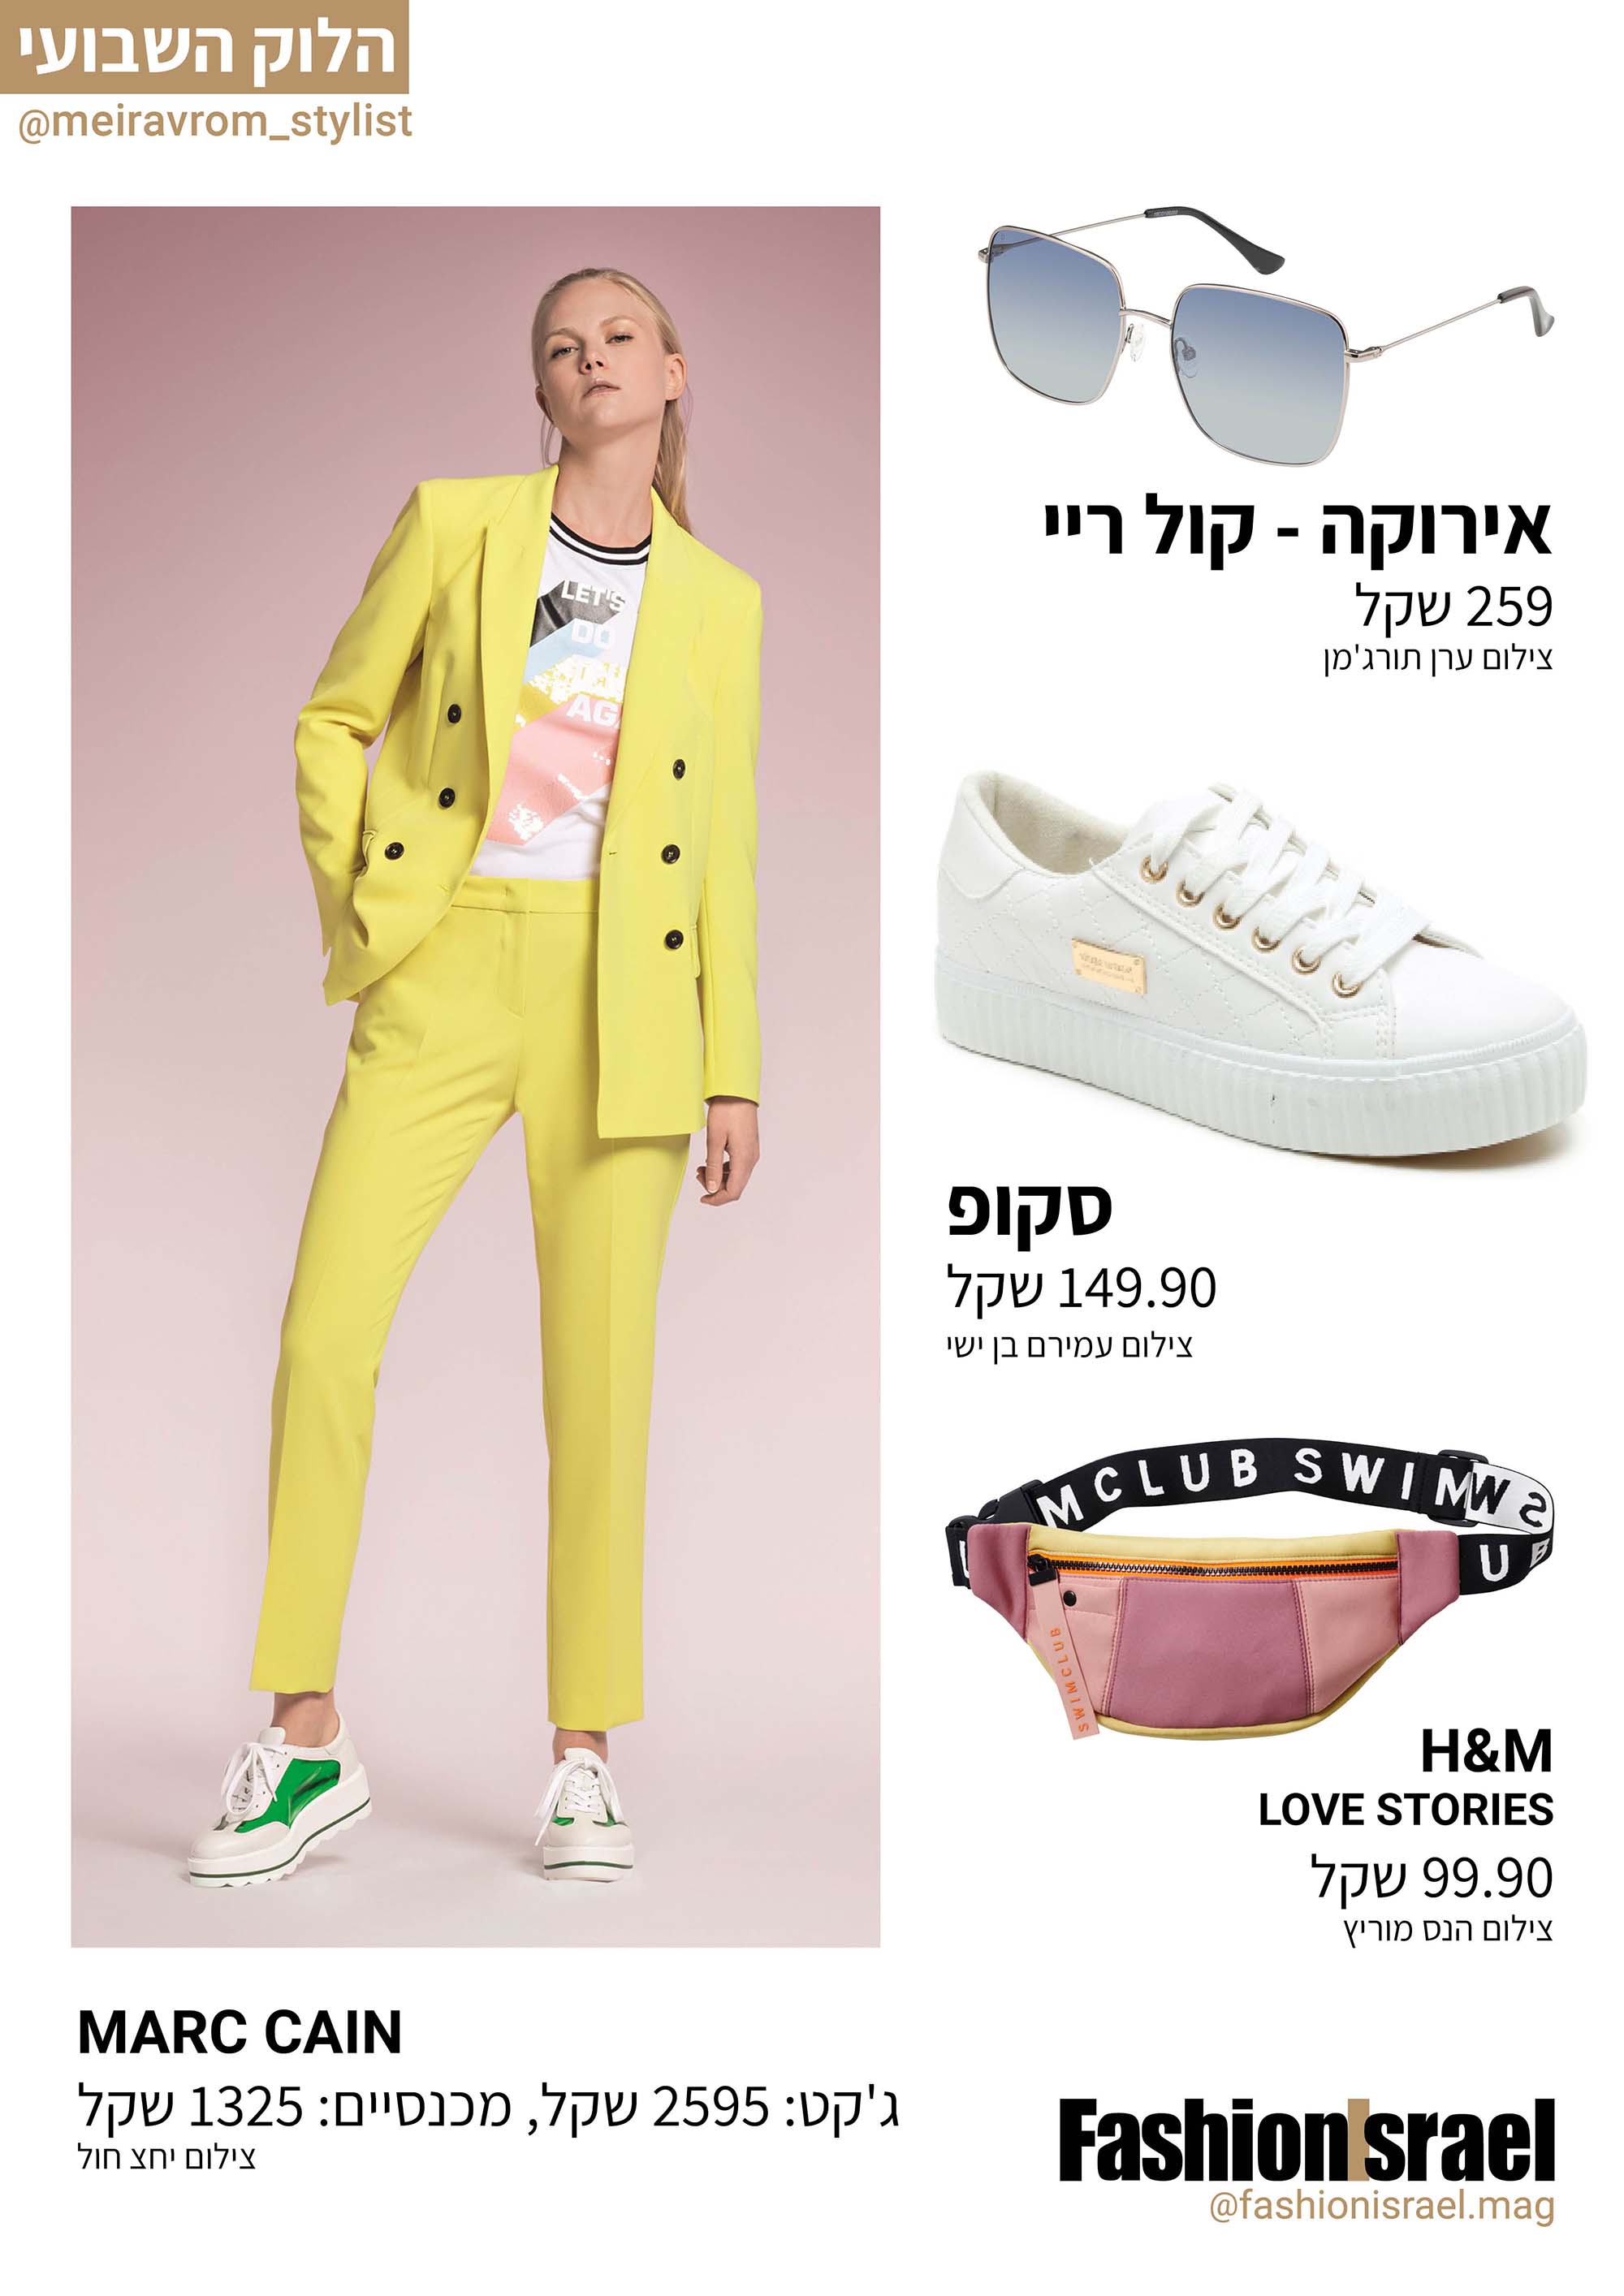 טוטאל לוק צהוב - הבחירה השבועית - Fashion Israel - מגזין אופנה של ישראל